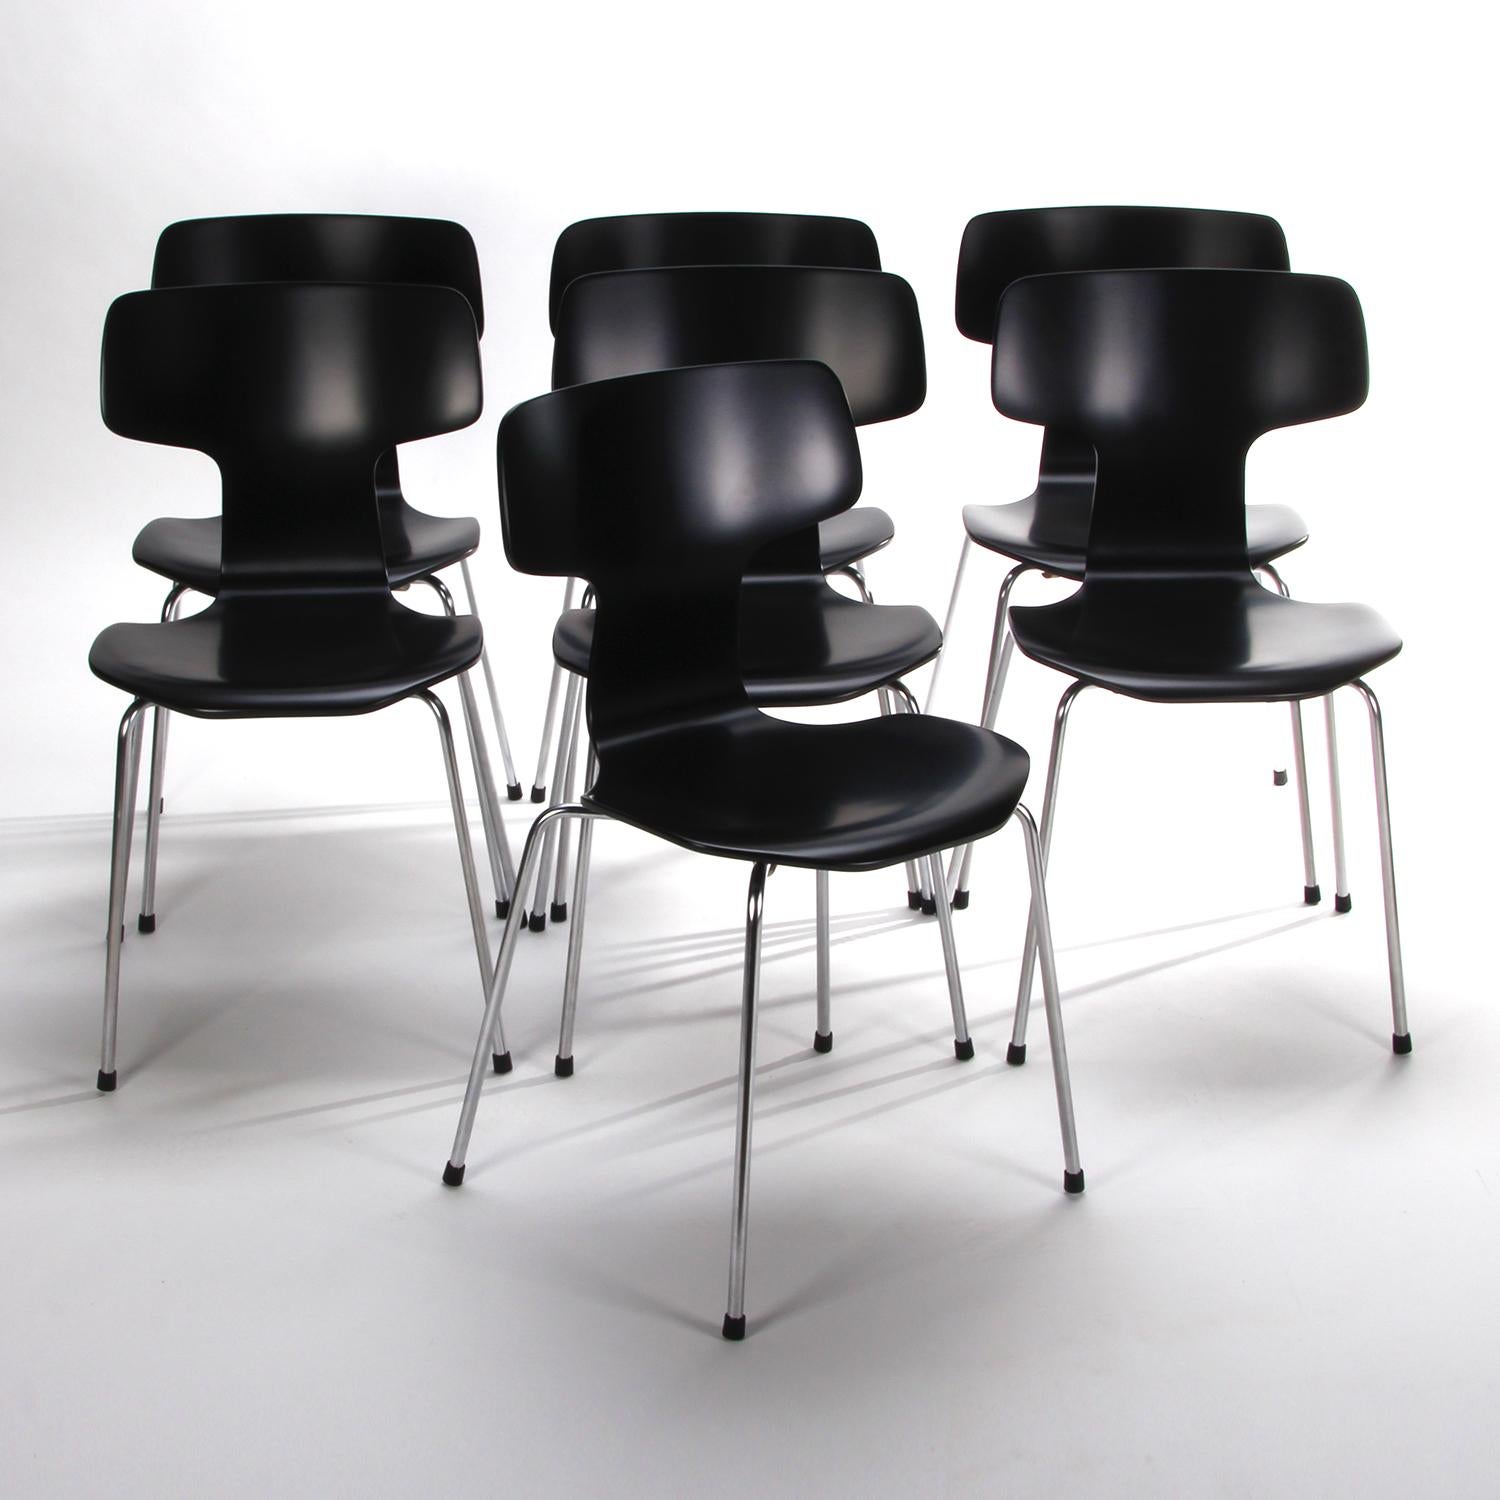 T-CHAIR Model 3103 Chair by Arne Jacobsen, Fritz Hansen, 1957 1